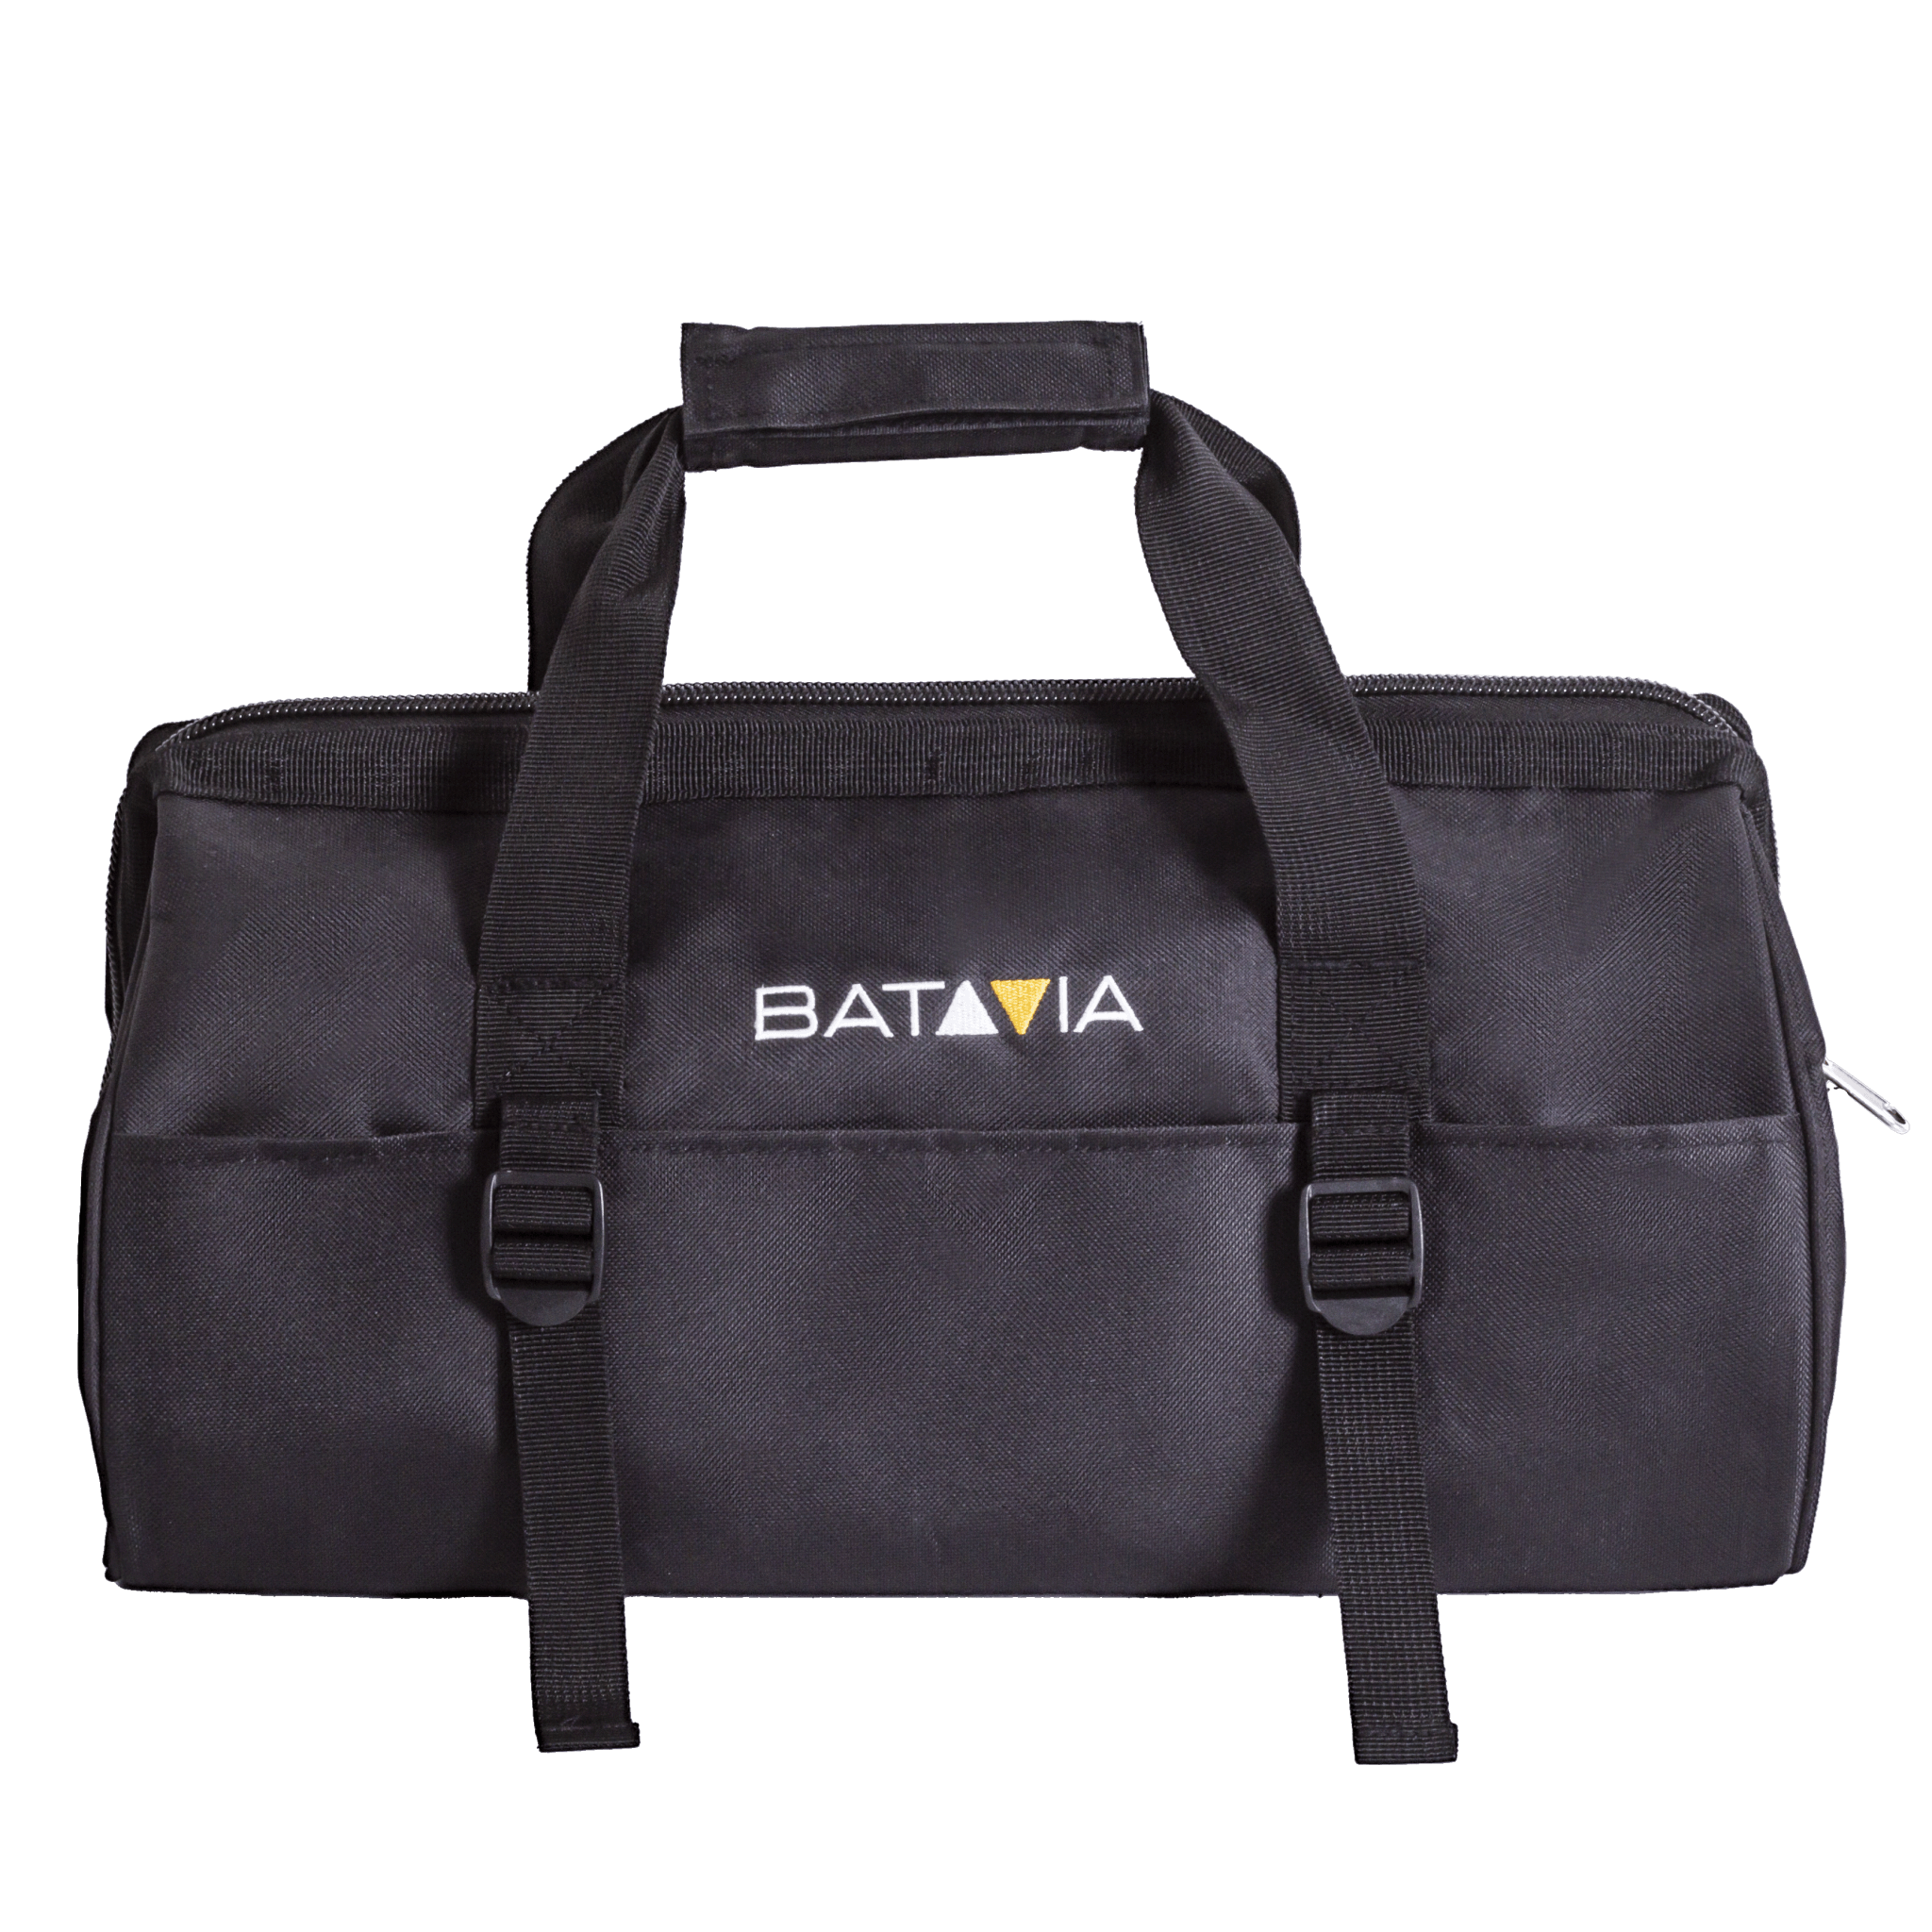 Batavia Tool Bag